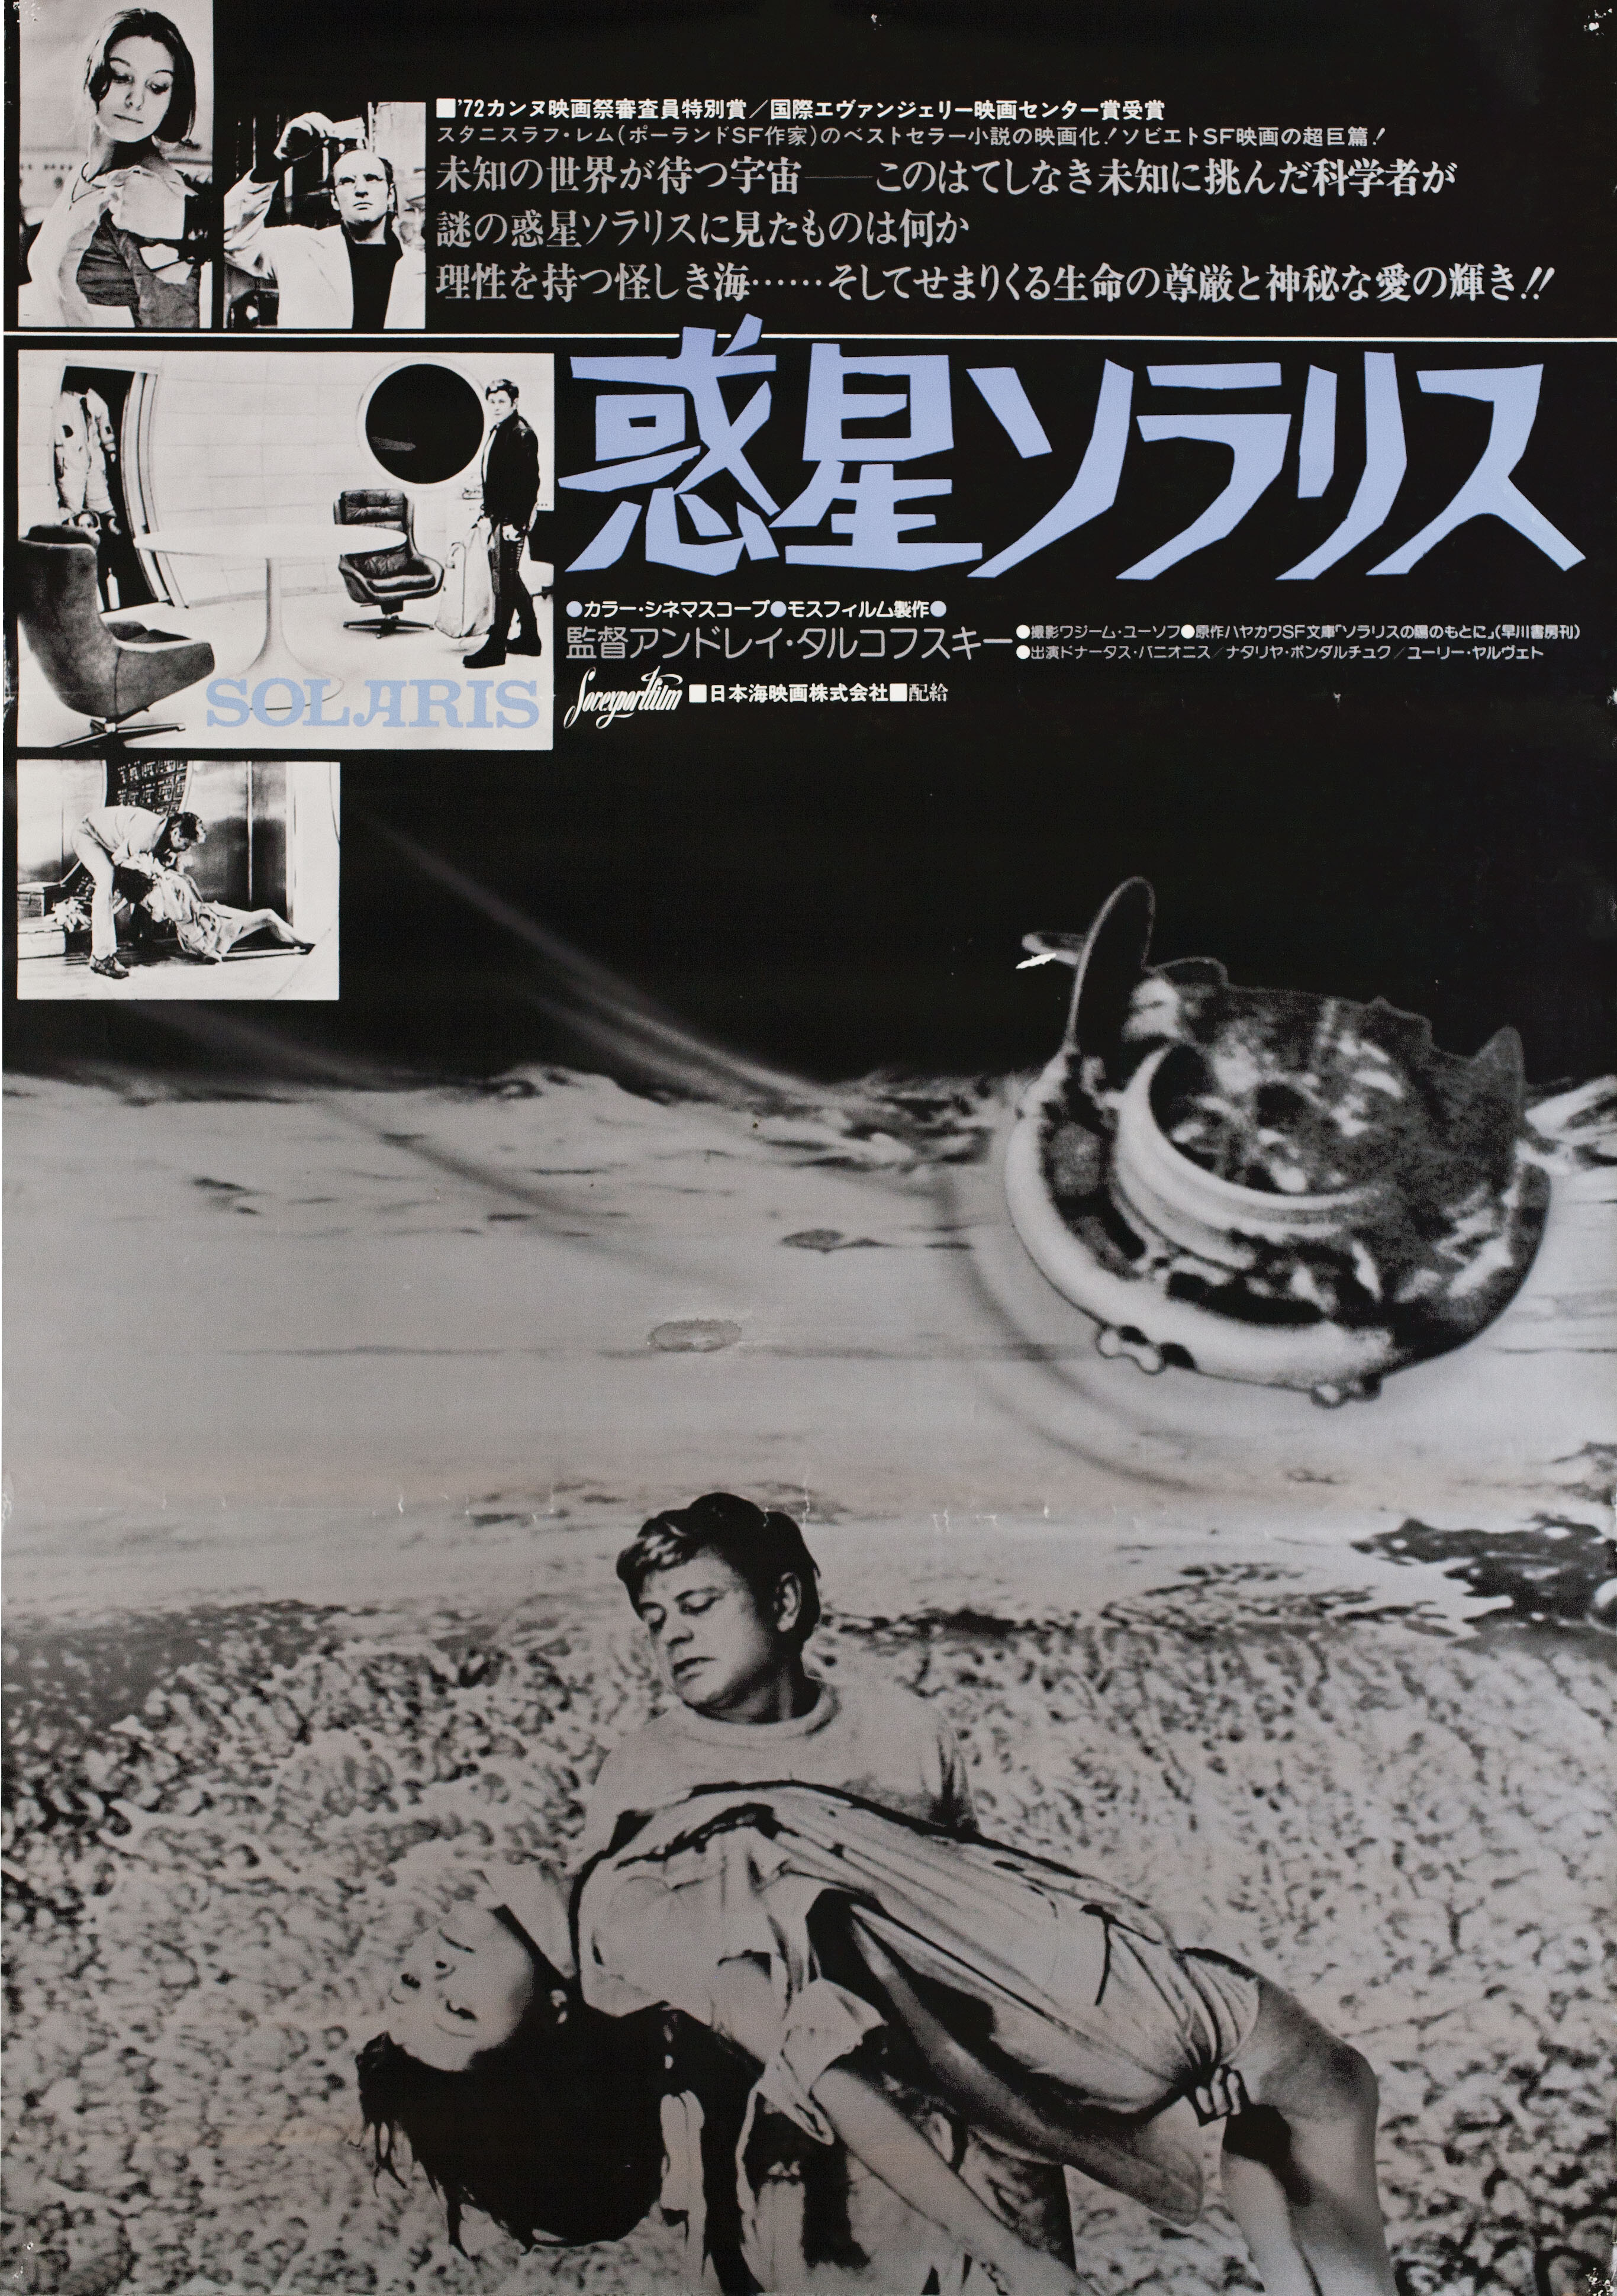 Солярис (Solaris, 1972), режиссёр Андрей Тарковский, японский постер к фильму (графический дизайн, 1977 год)